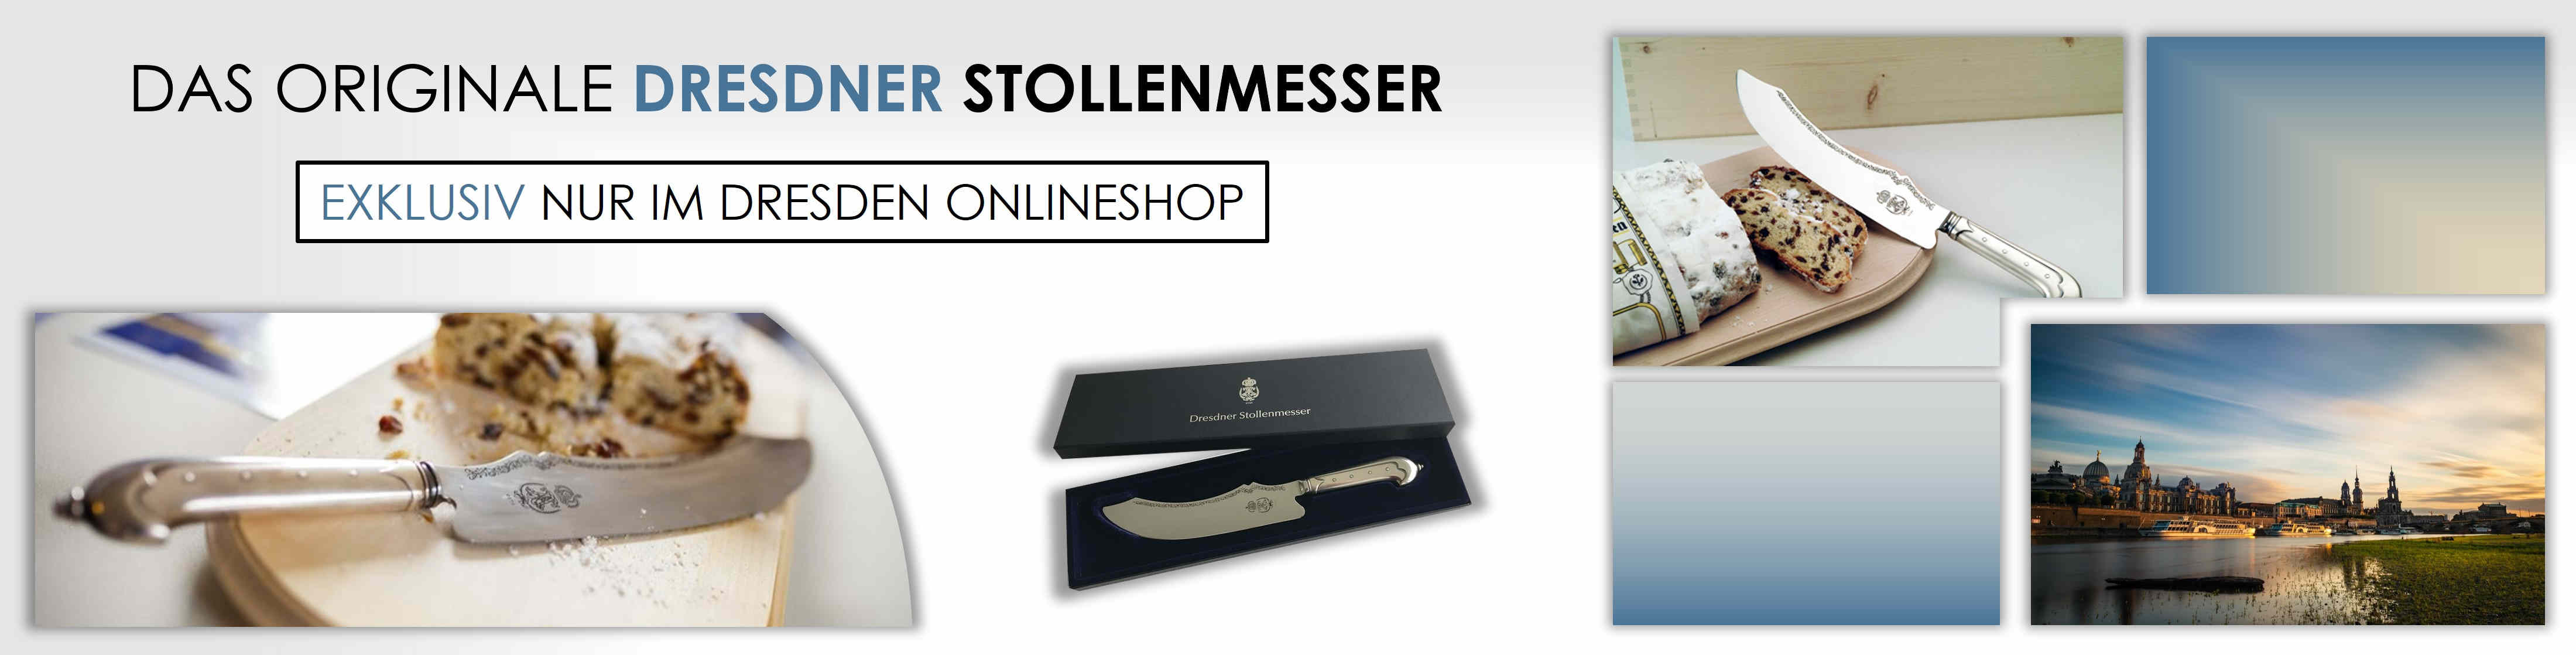 Dresdner Stollenmesser online kaufen